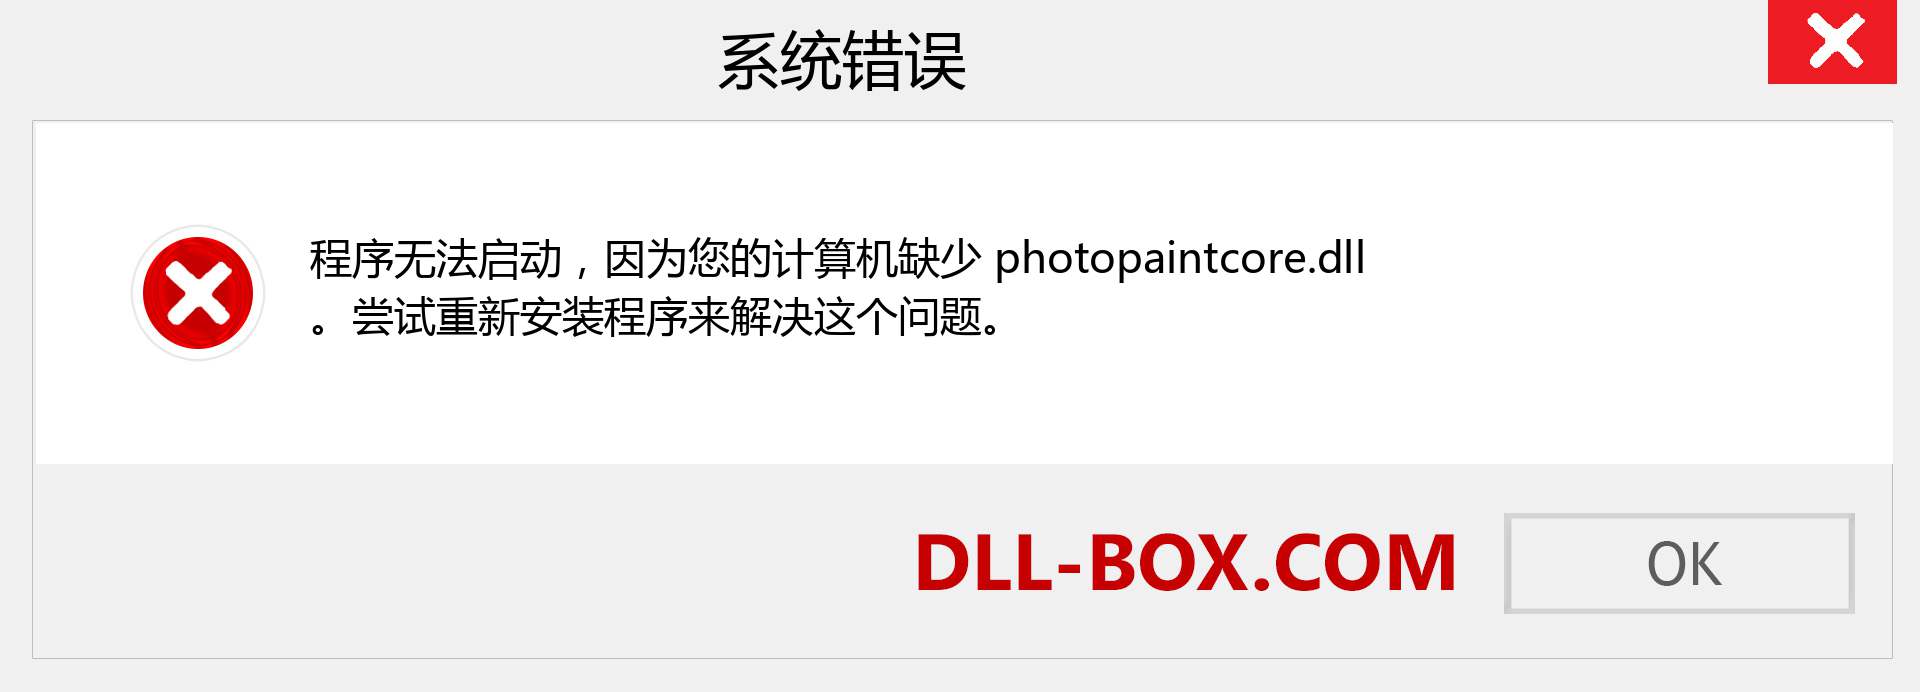 photopaintcore.dll 文件丢失？。 适用于 Windows 7、8、10 的下载 - 修复 Windows、照片、图像上的 photopaintcore dll 丢失错误